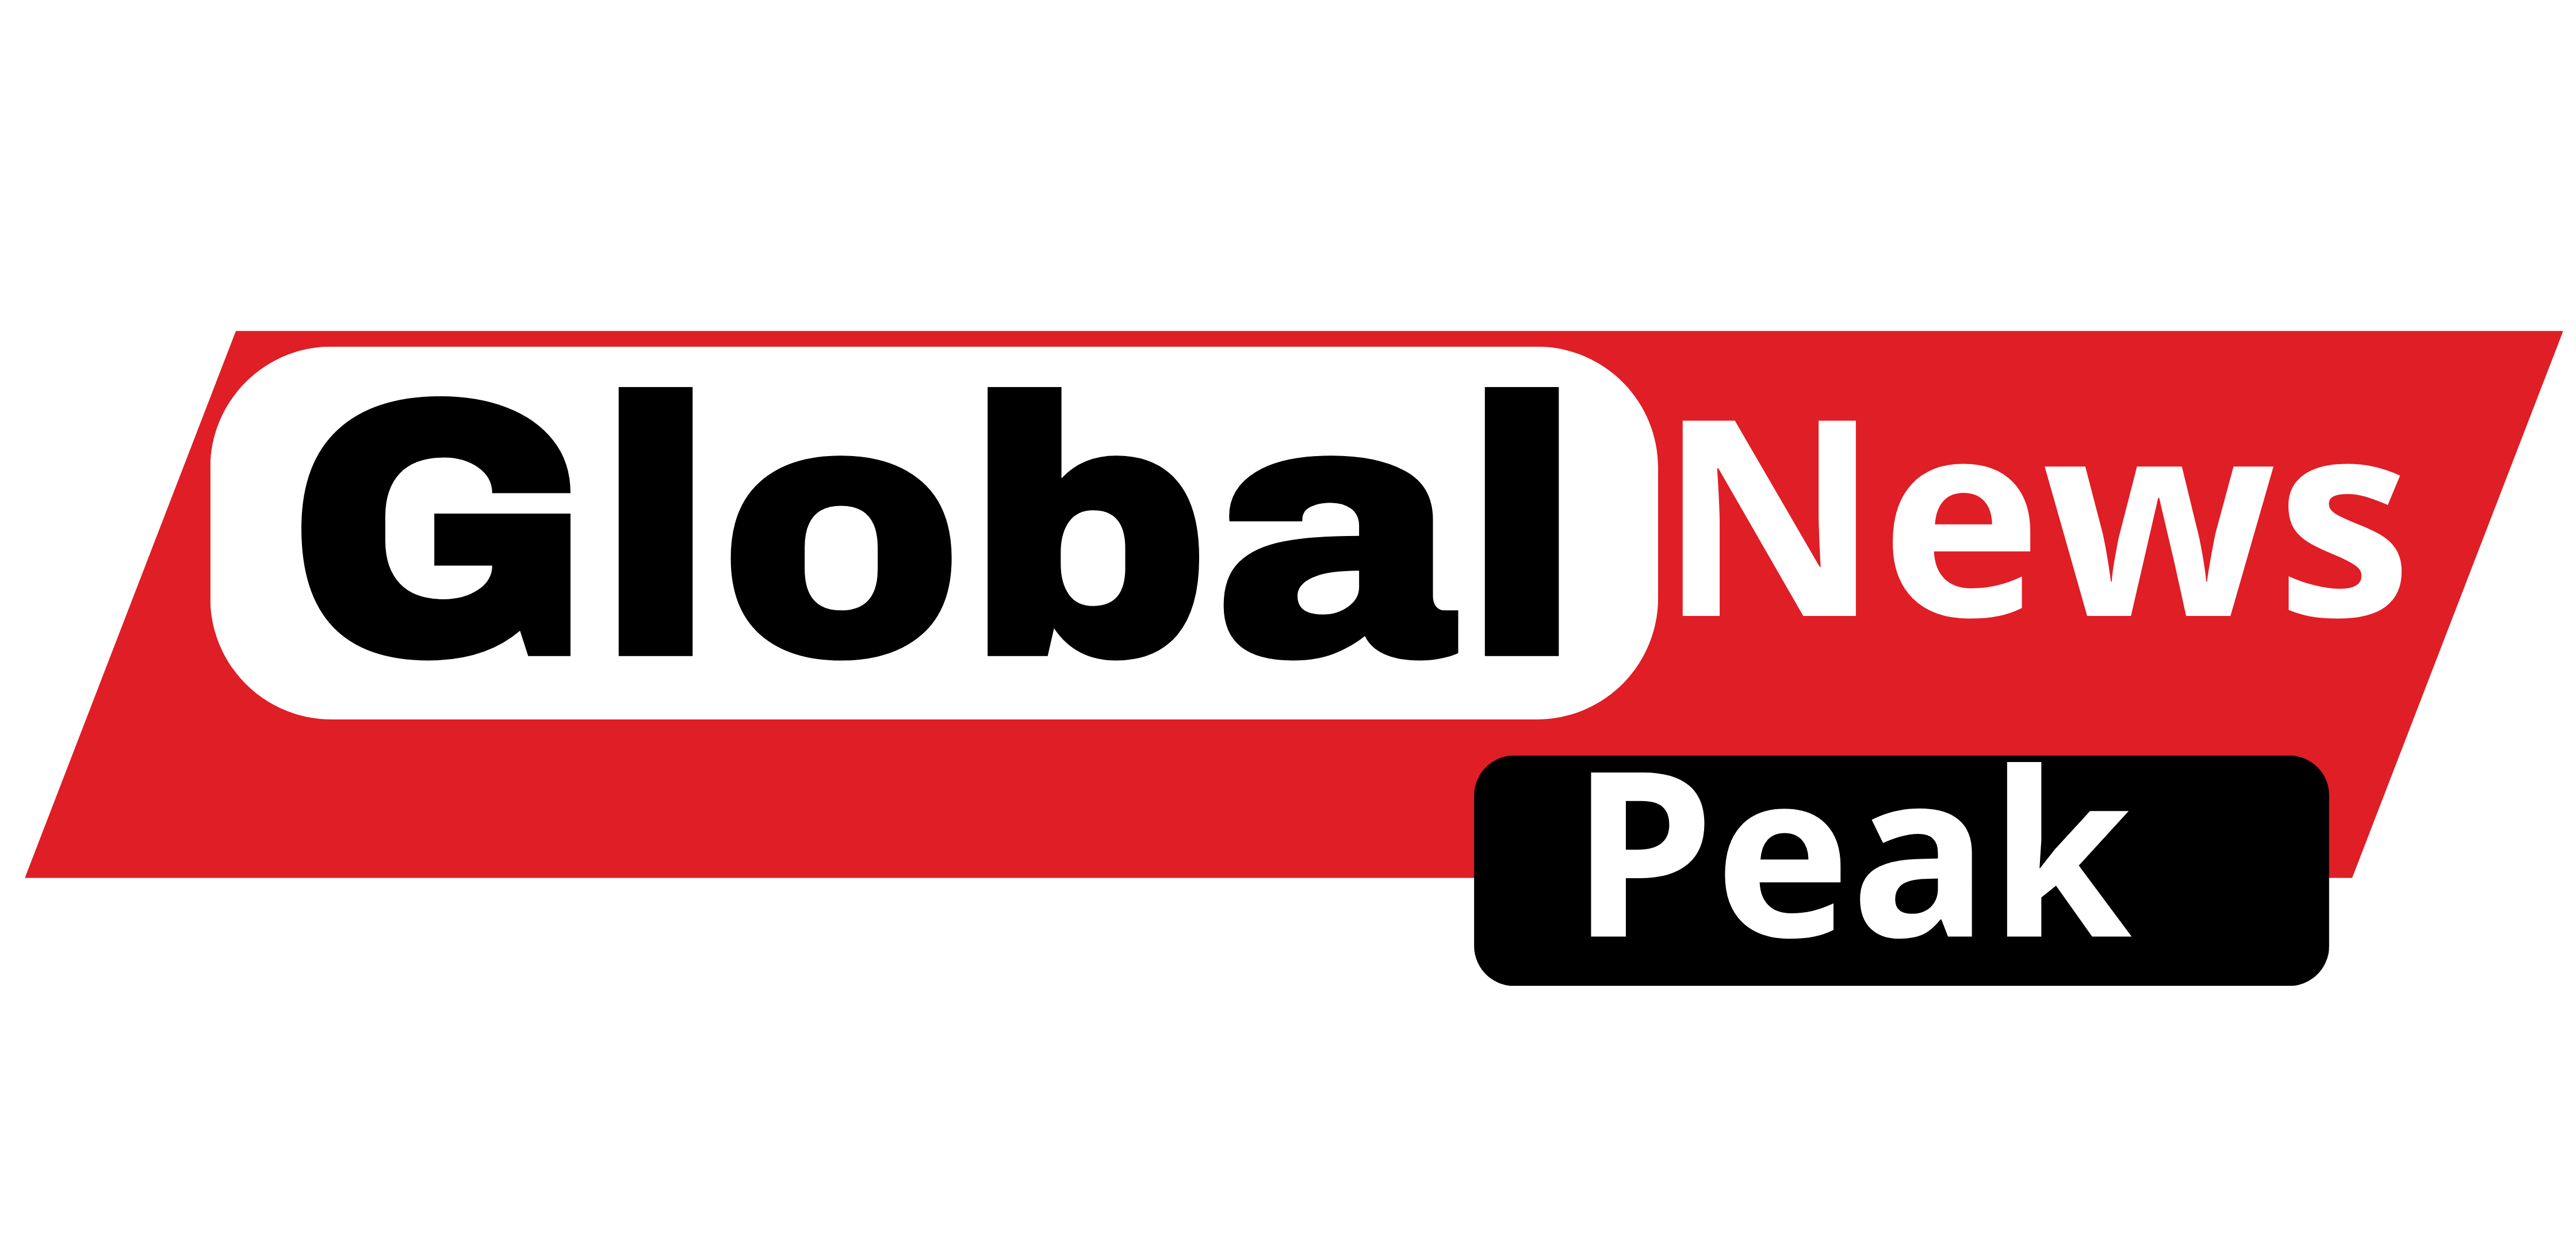 Globalnewseak